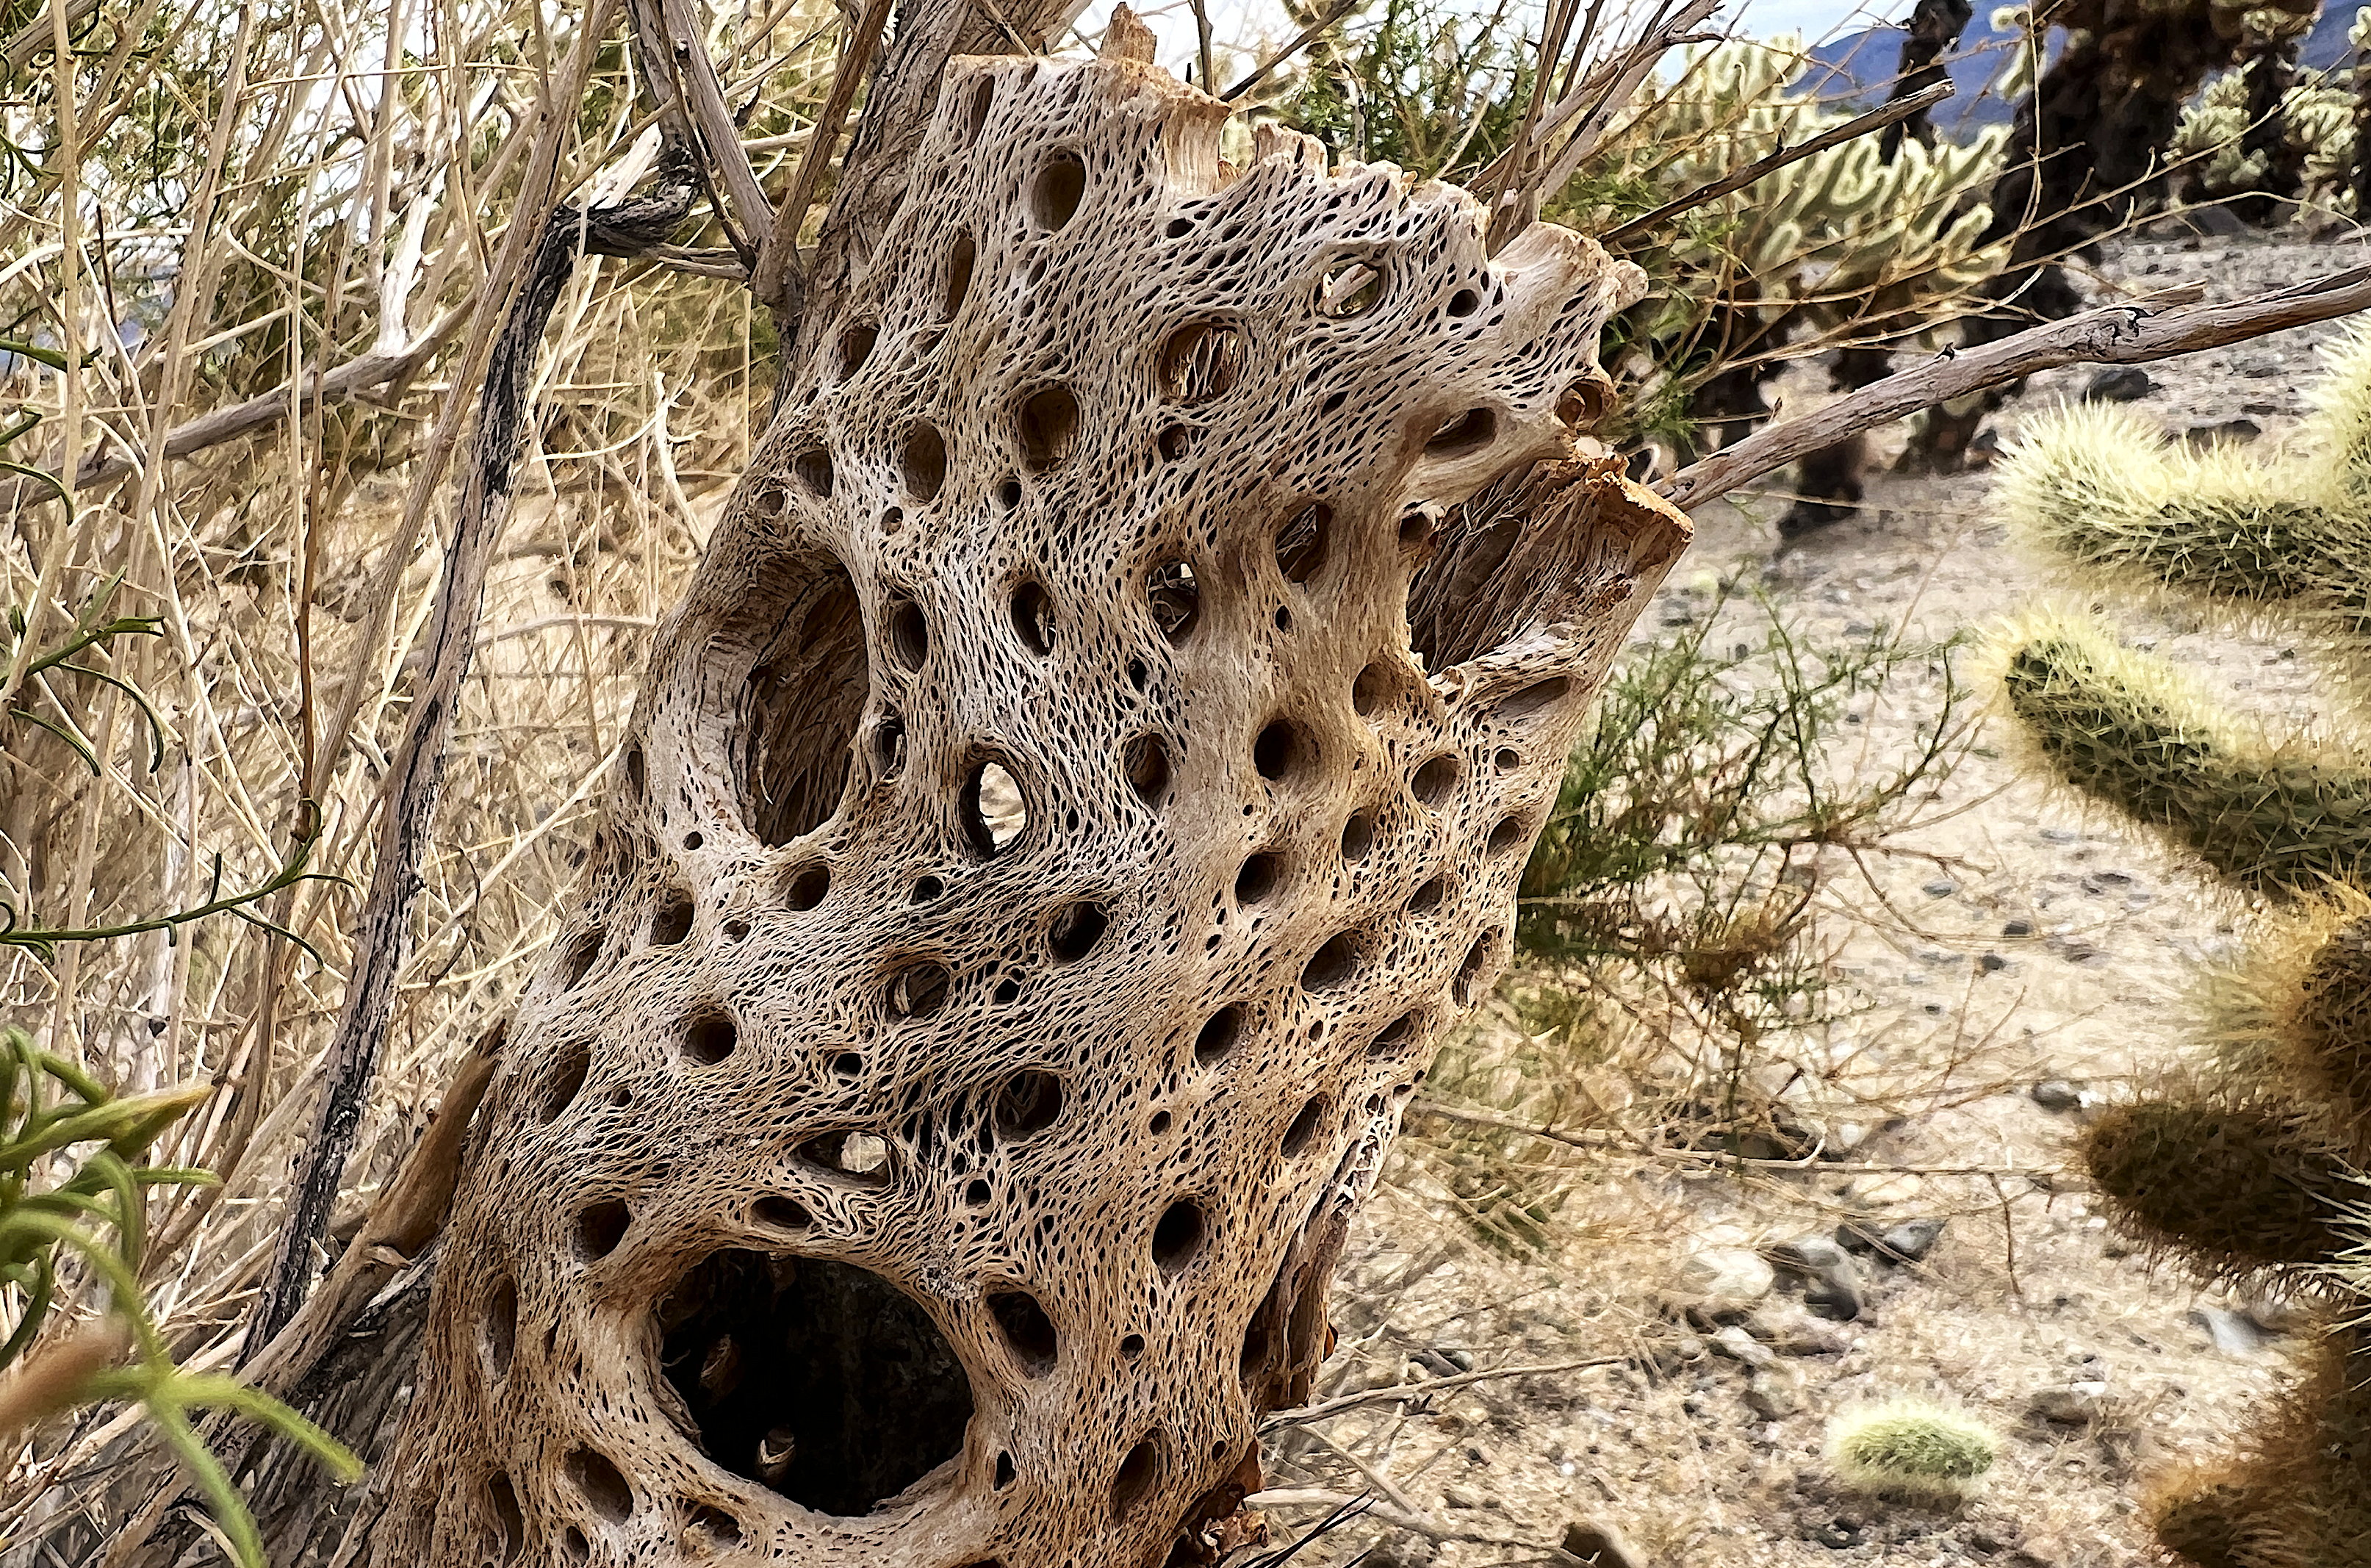 Ein Stamm des Kaktus, nachdem er abgestorben ist. Der Stamm besteht aus vielen verflochtenen Fasern und hat regelmässige Löcher, ohne dass seine Stabilität gefährdet wäre.